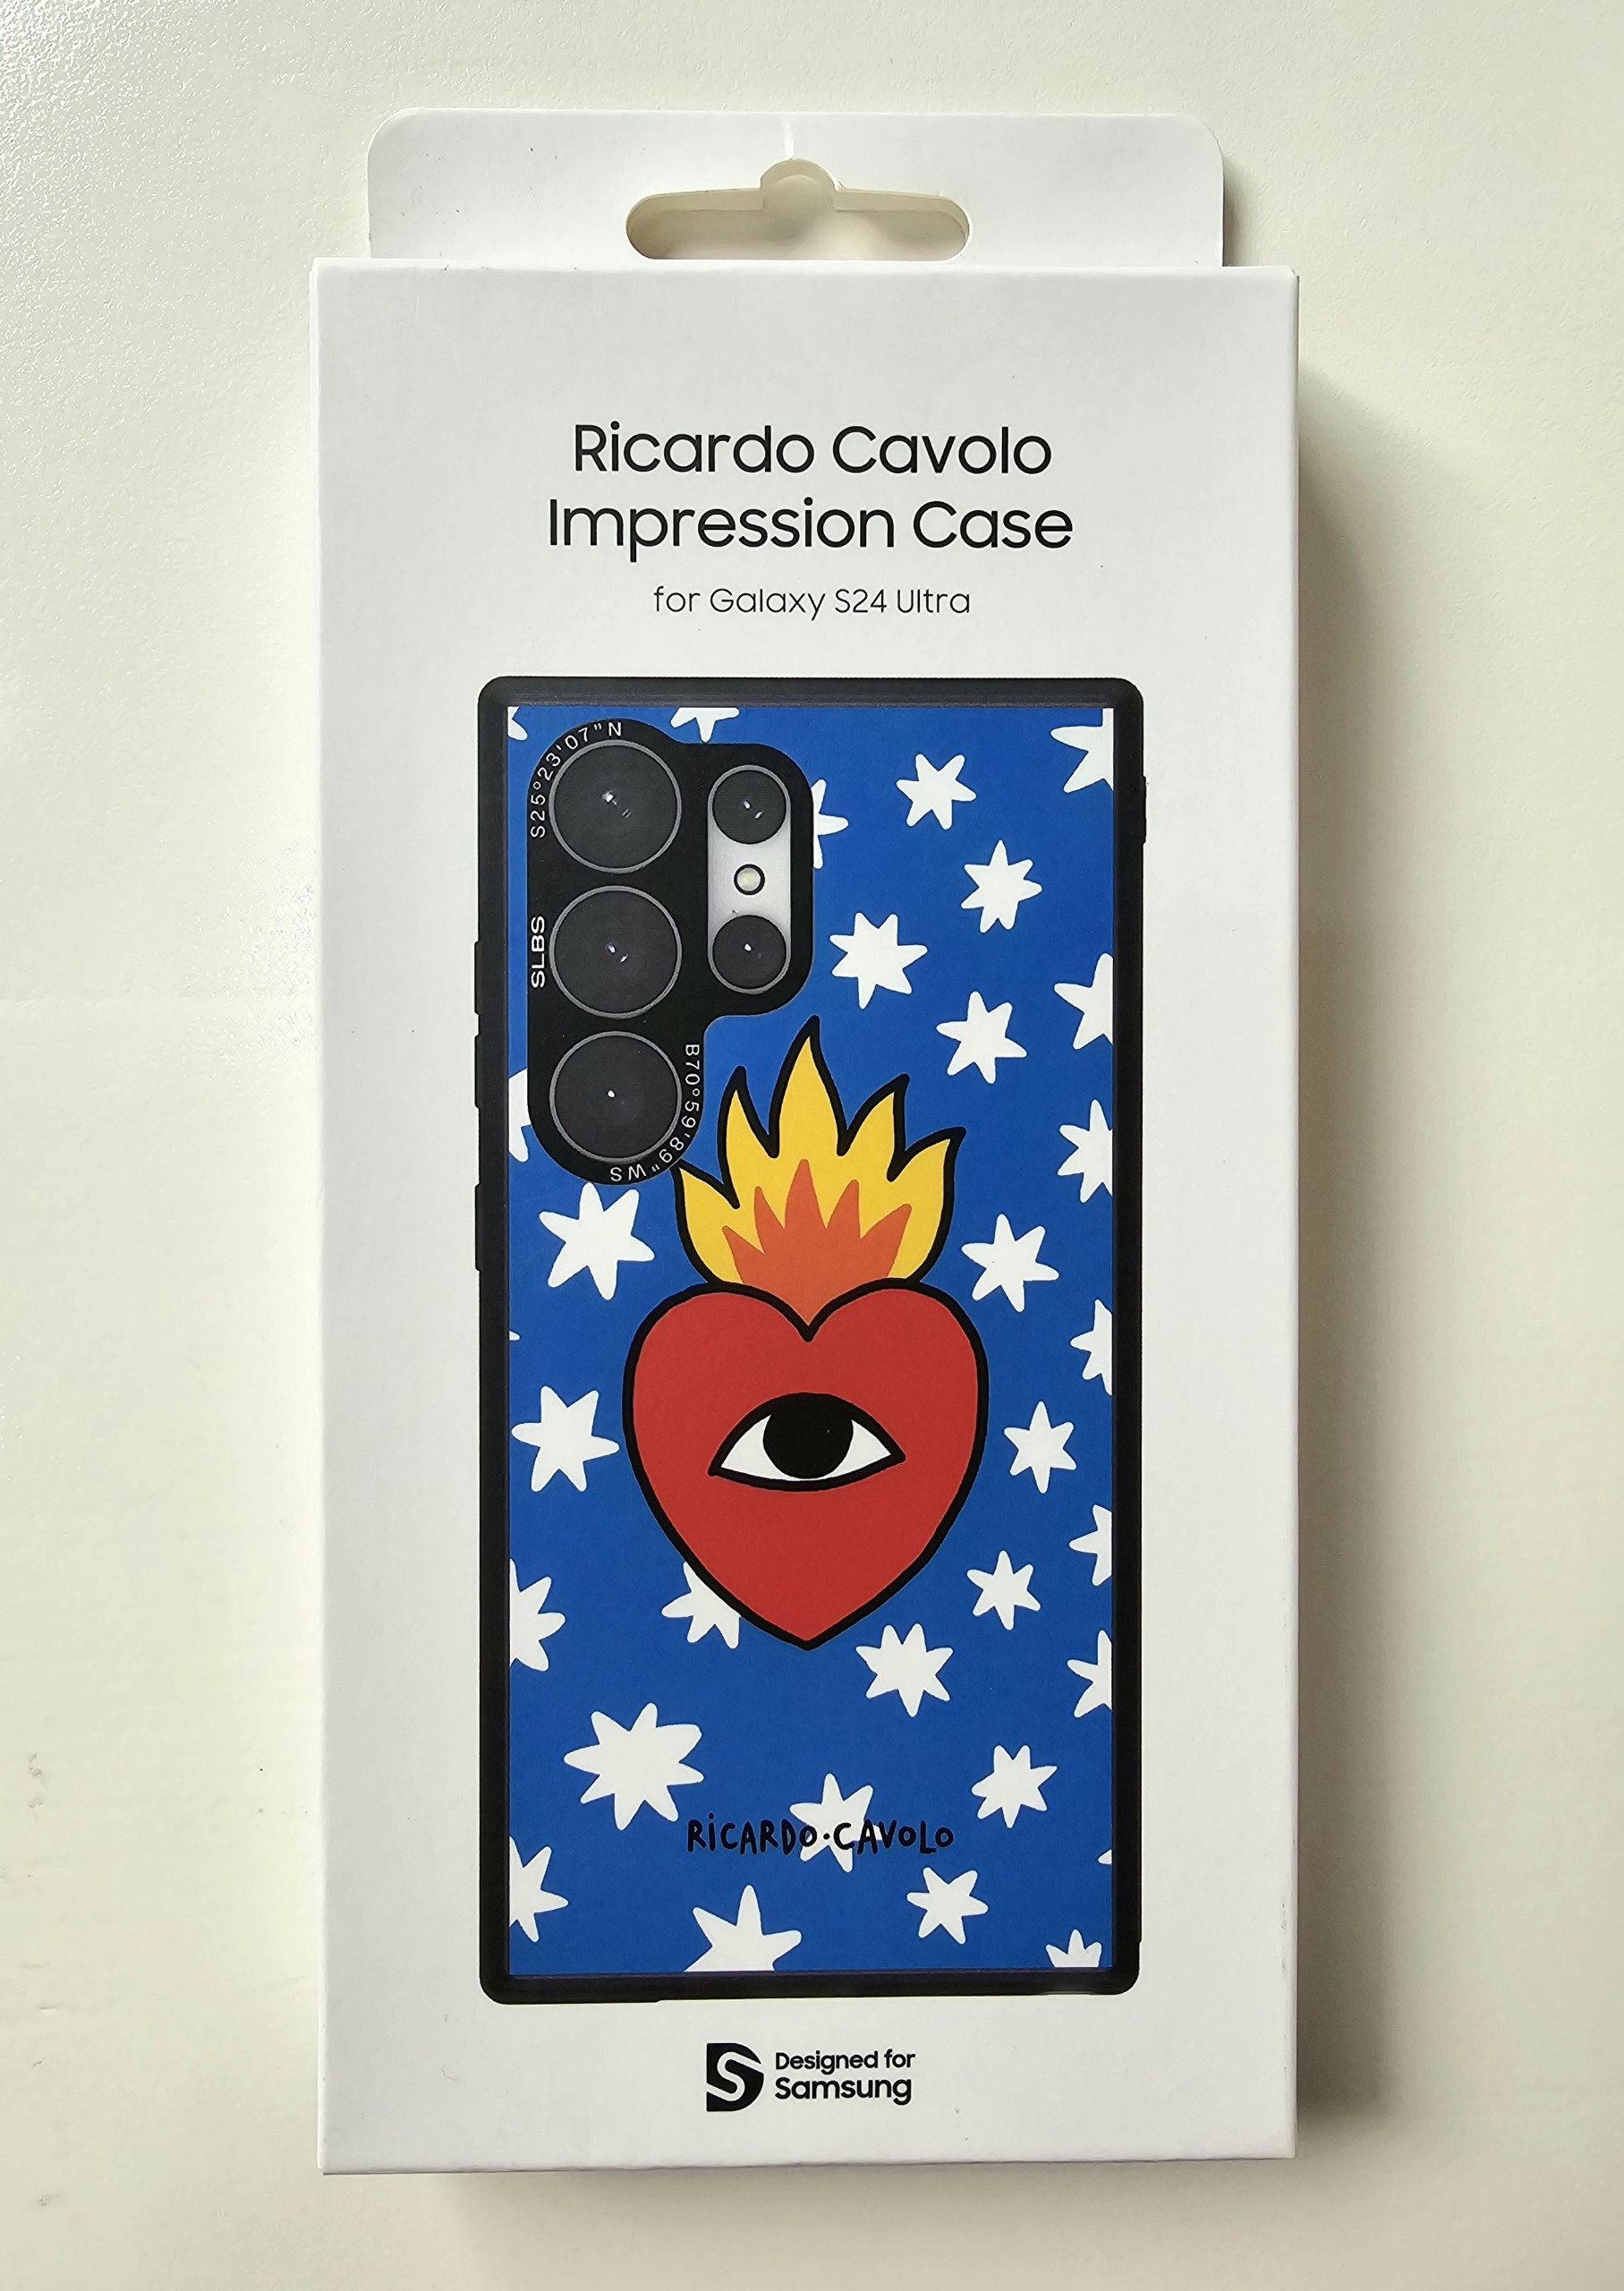 Ốp lưng Samsung Galaxy S24 Ultra phiên bản nghệ sĩ Ricardo Cavolo (GP-FPS928) - Hàng Chính Hãng